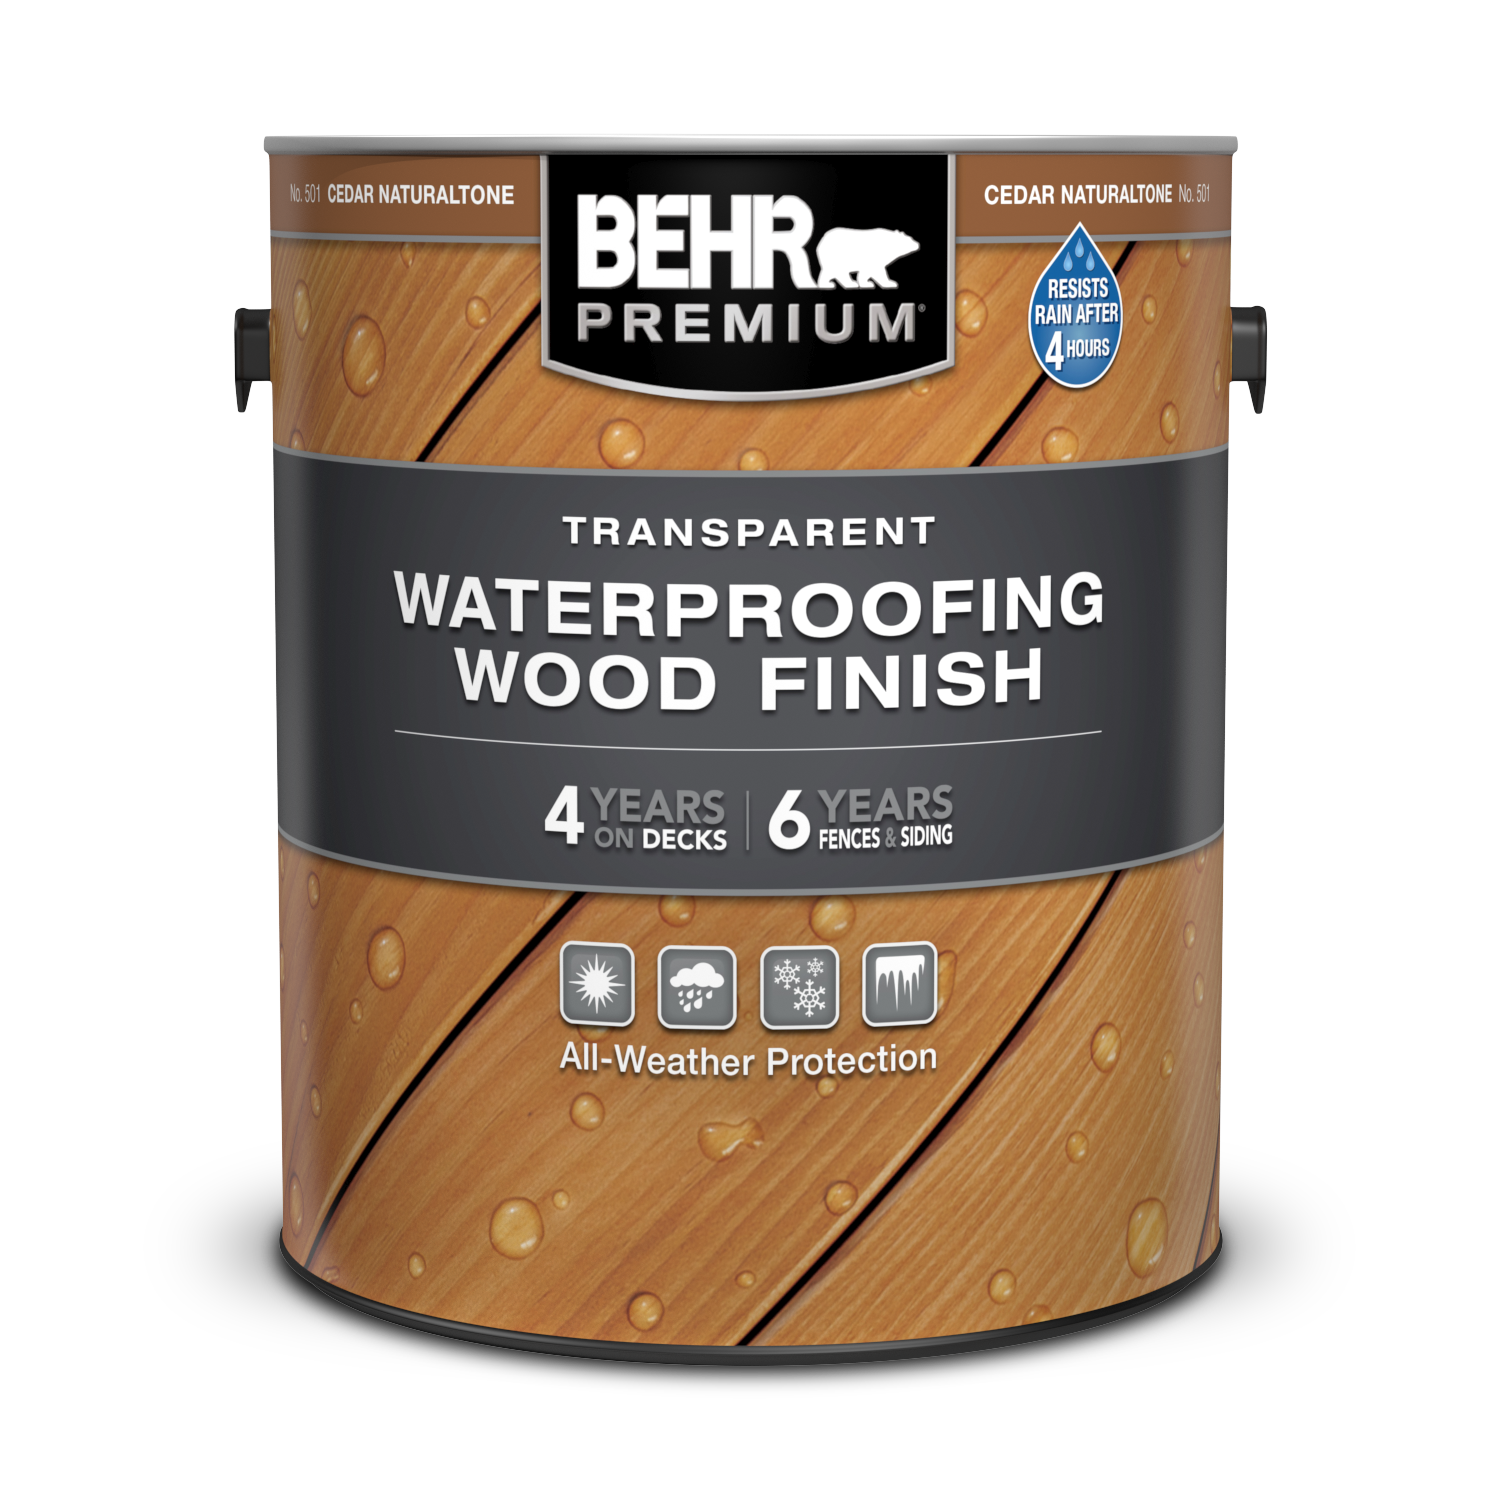 Transparent Waterproofing Wood Finish | BEHR PREMIUM® | Behr